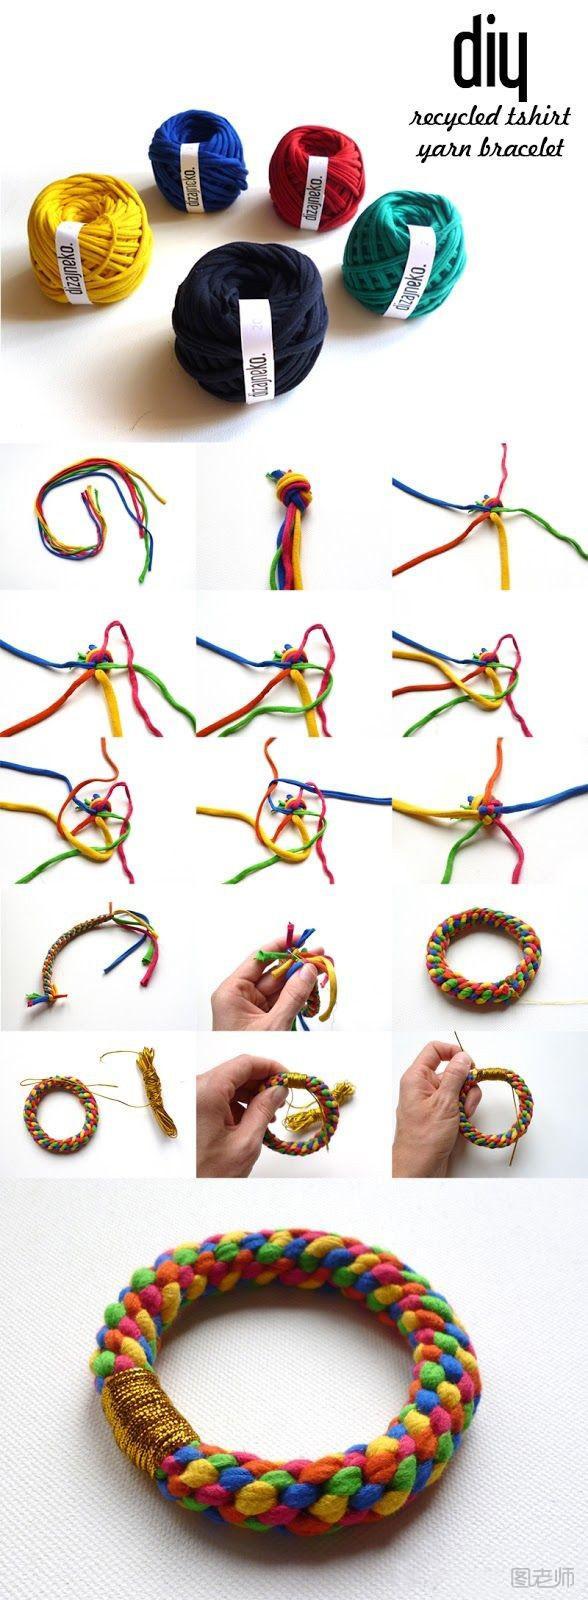 多彩五股绳子编织圆环形时尚手镯手绳图片教程